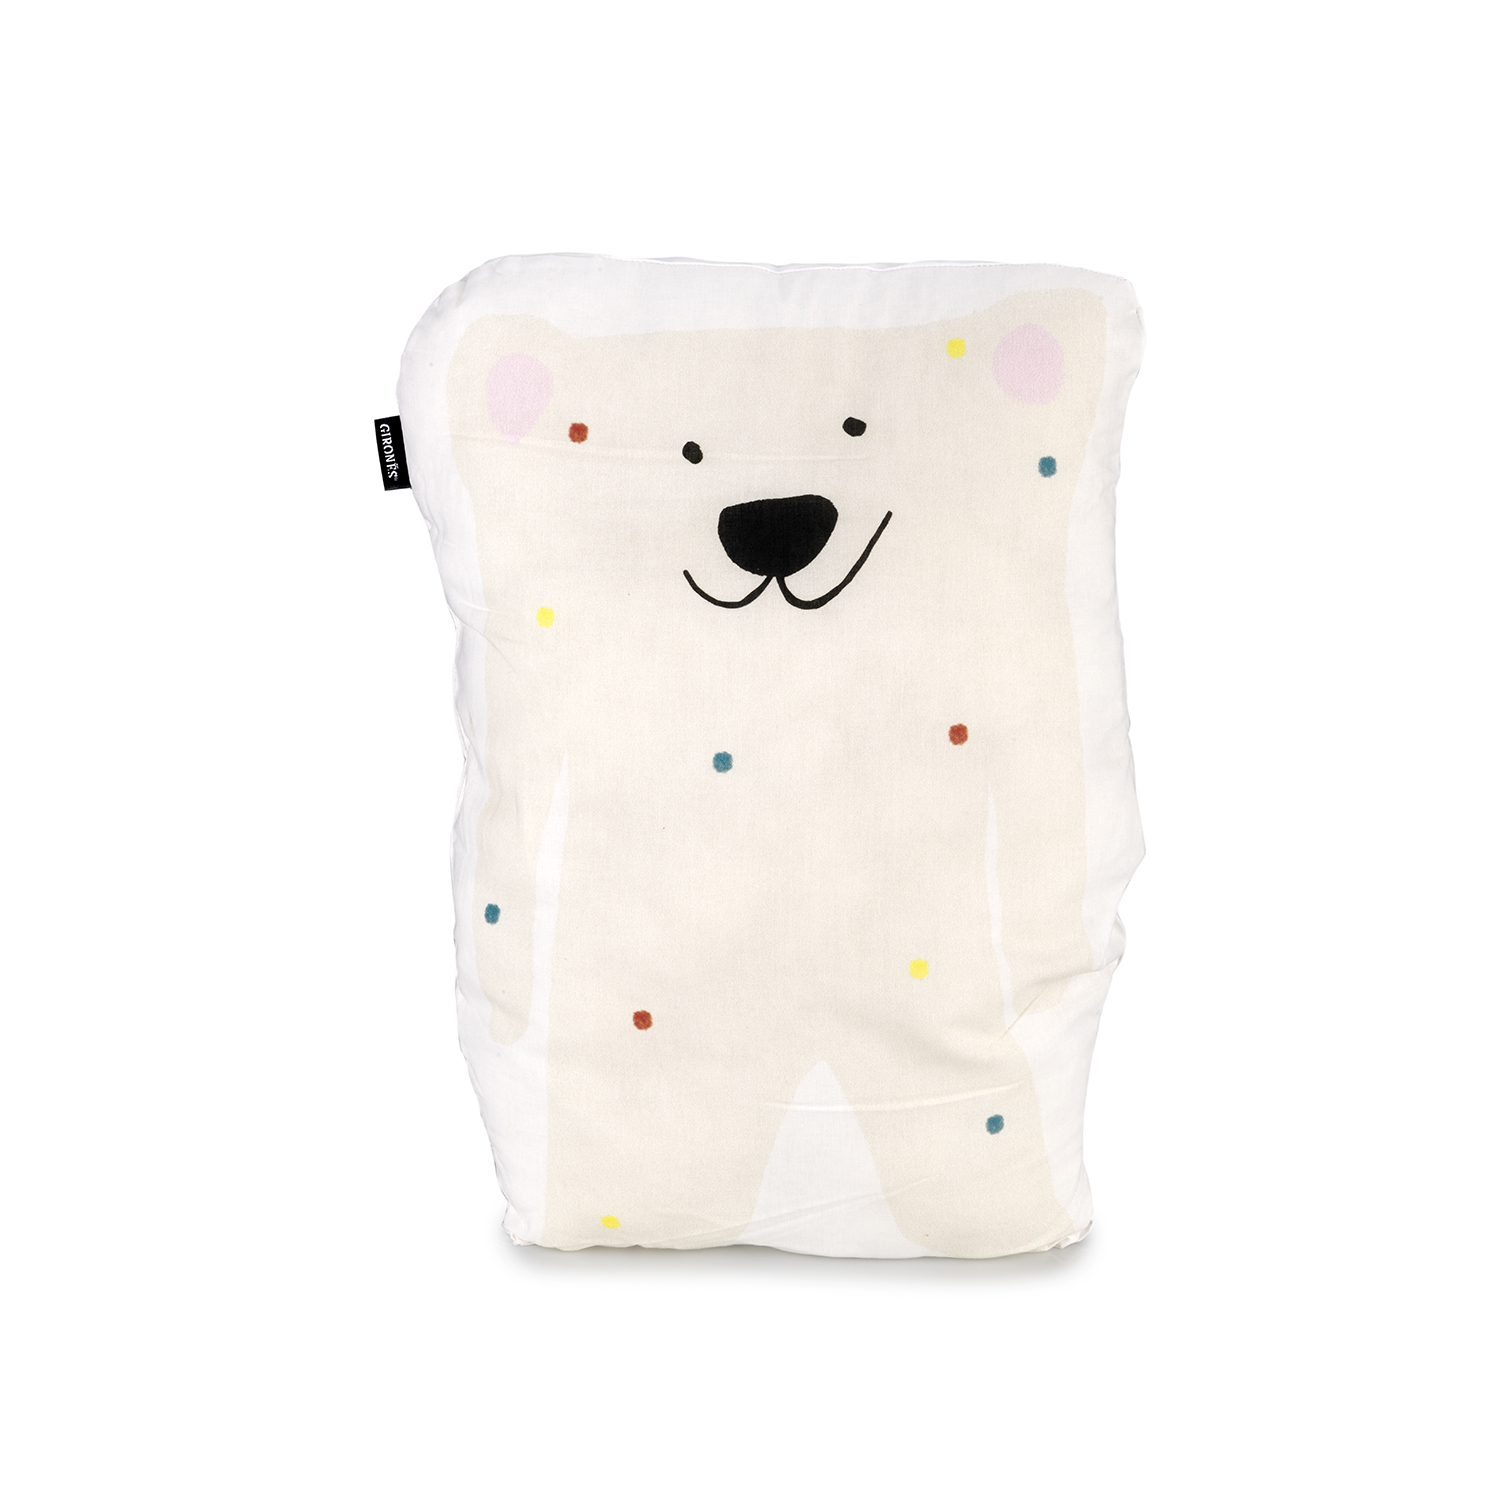 polar bear shaped cushion by GironesHome